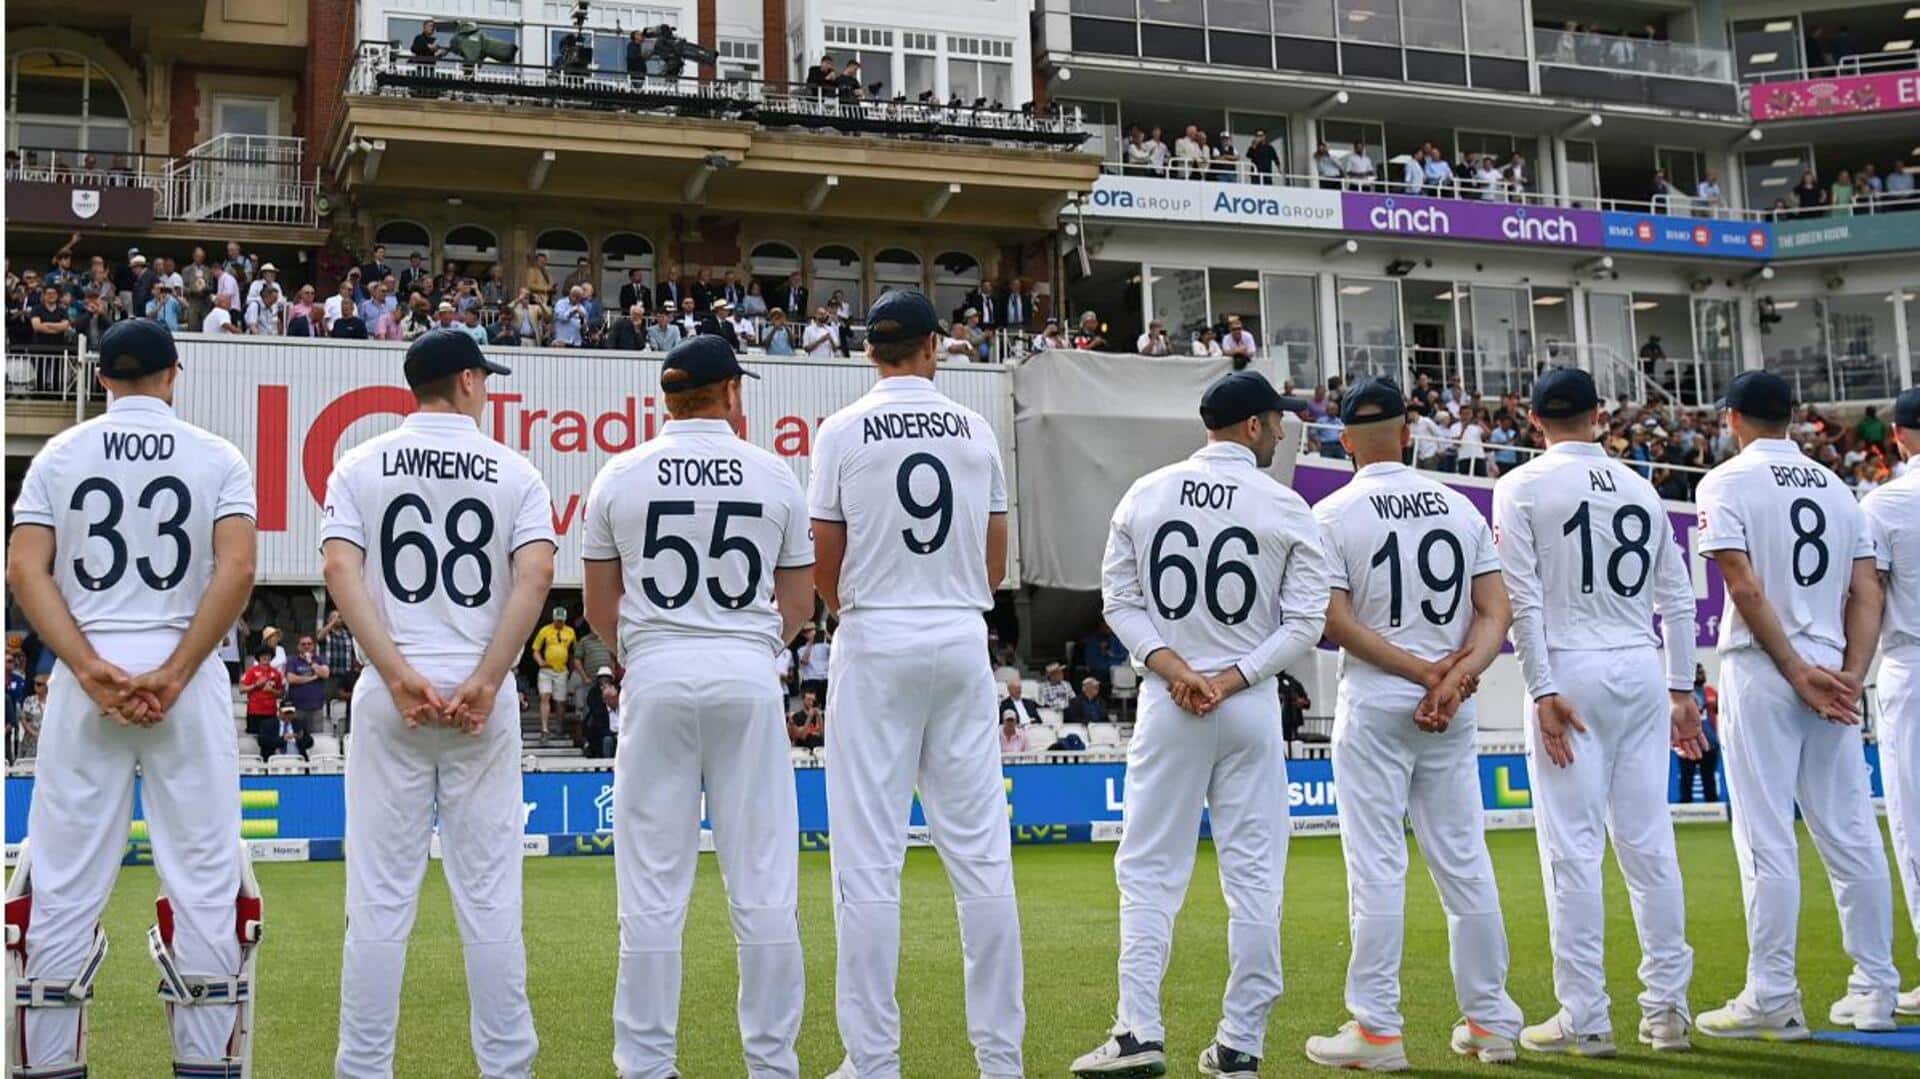 साथी खिलाड़ियों की जर्सी पहनकर मैदान पर उतरी इंग्लैंड क्रिकेट टीम, जानिए क्या है वजह